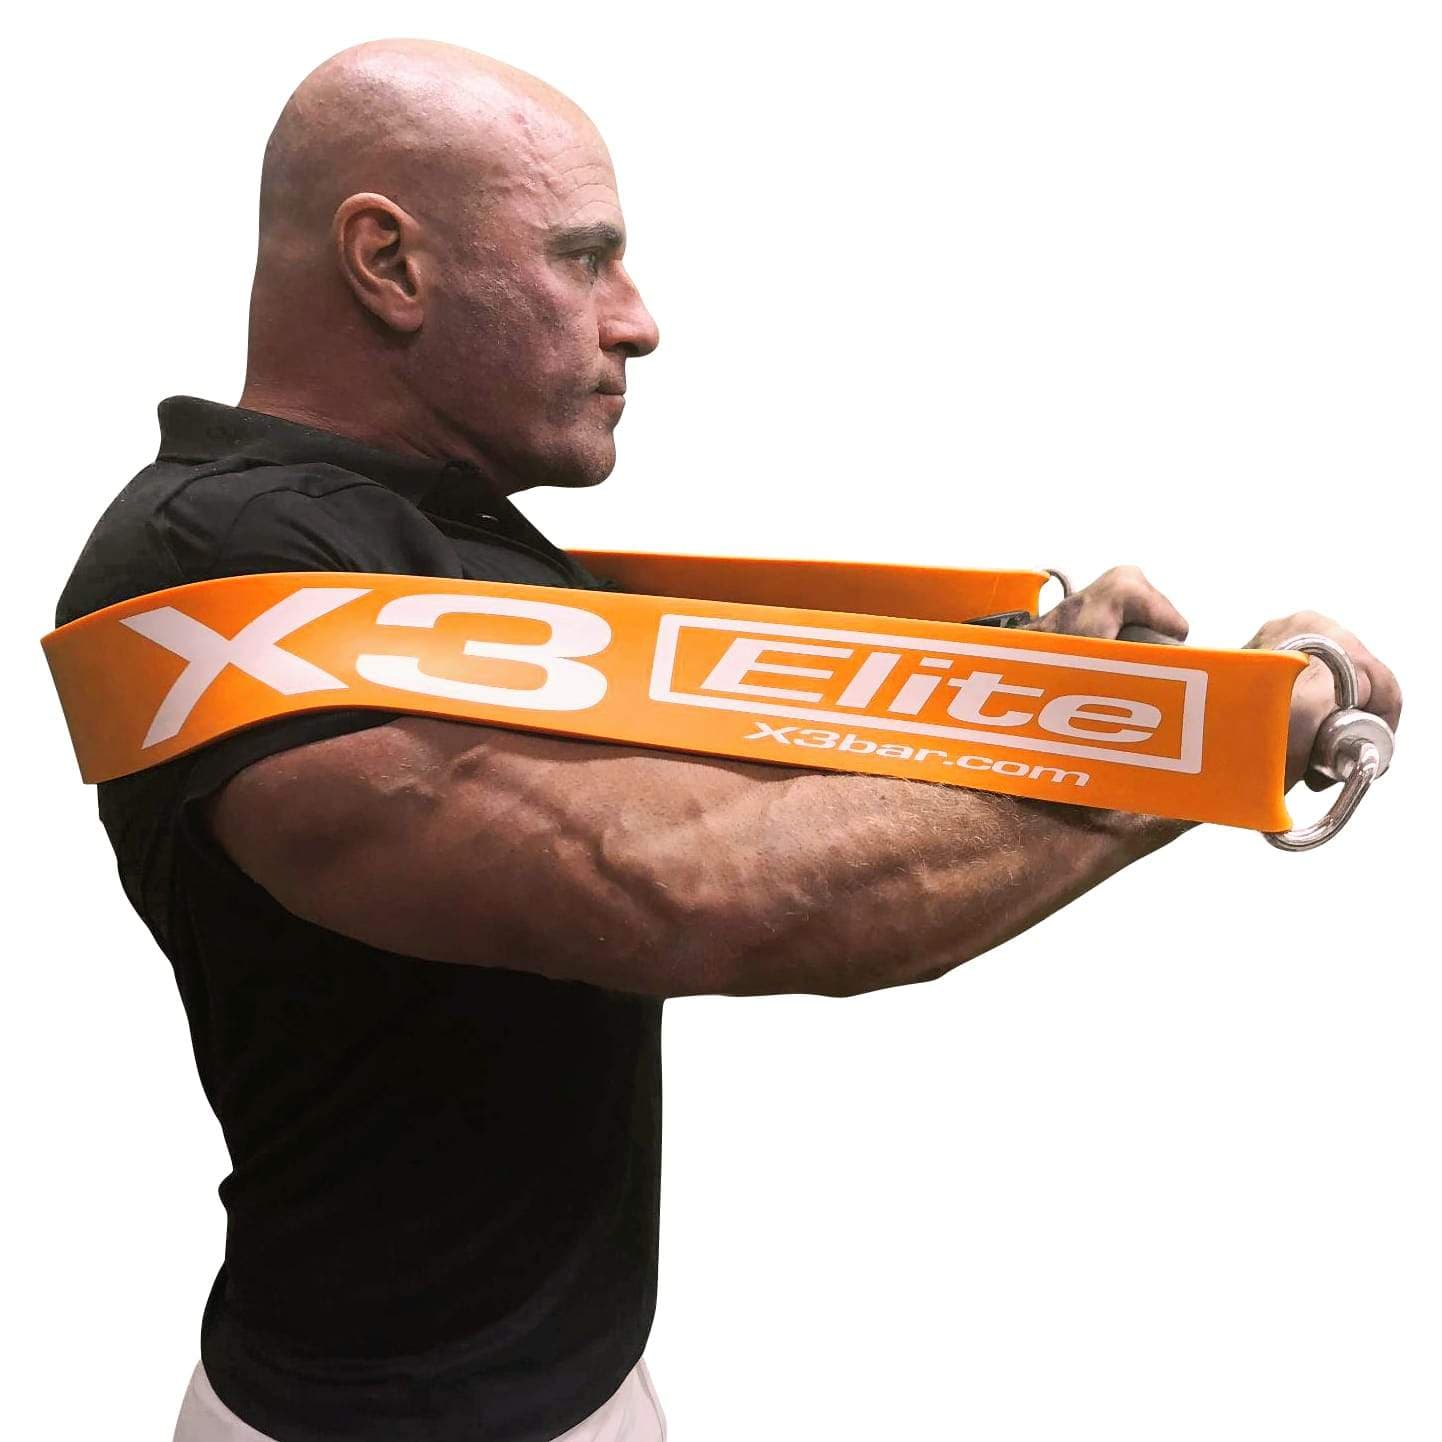 Mand som træner triceps med x3 bar og orange elite elastik